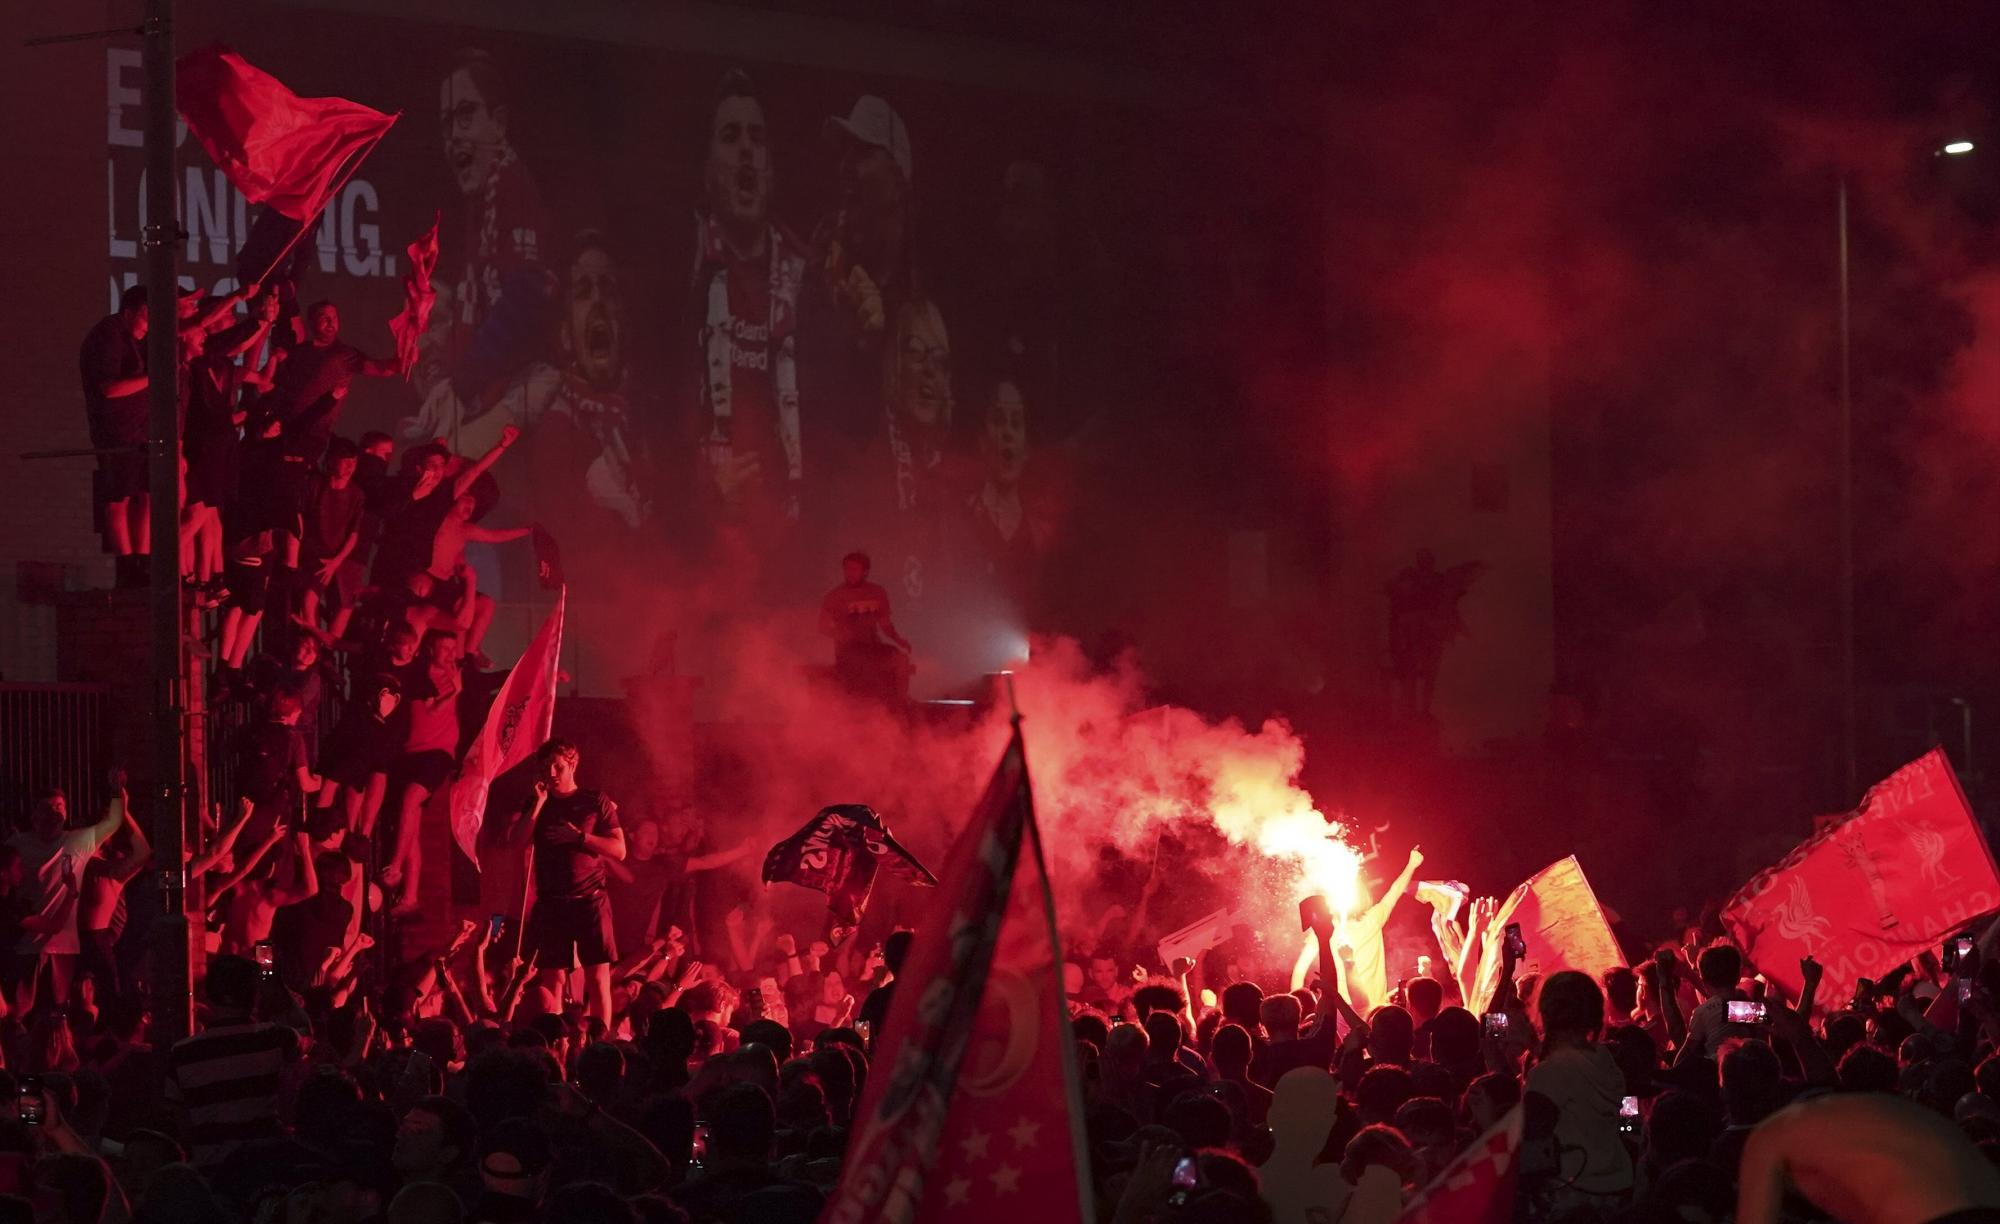 Con fuegos artificiales y bengalas celebraron los fanáticos del Liverpool en las afueras del Anfield Stadium durante la celebración decimonoveno título de su club en la liga inglesa  (AP photo/Jon Super)